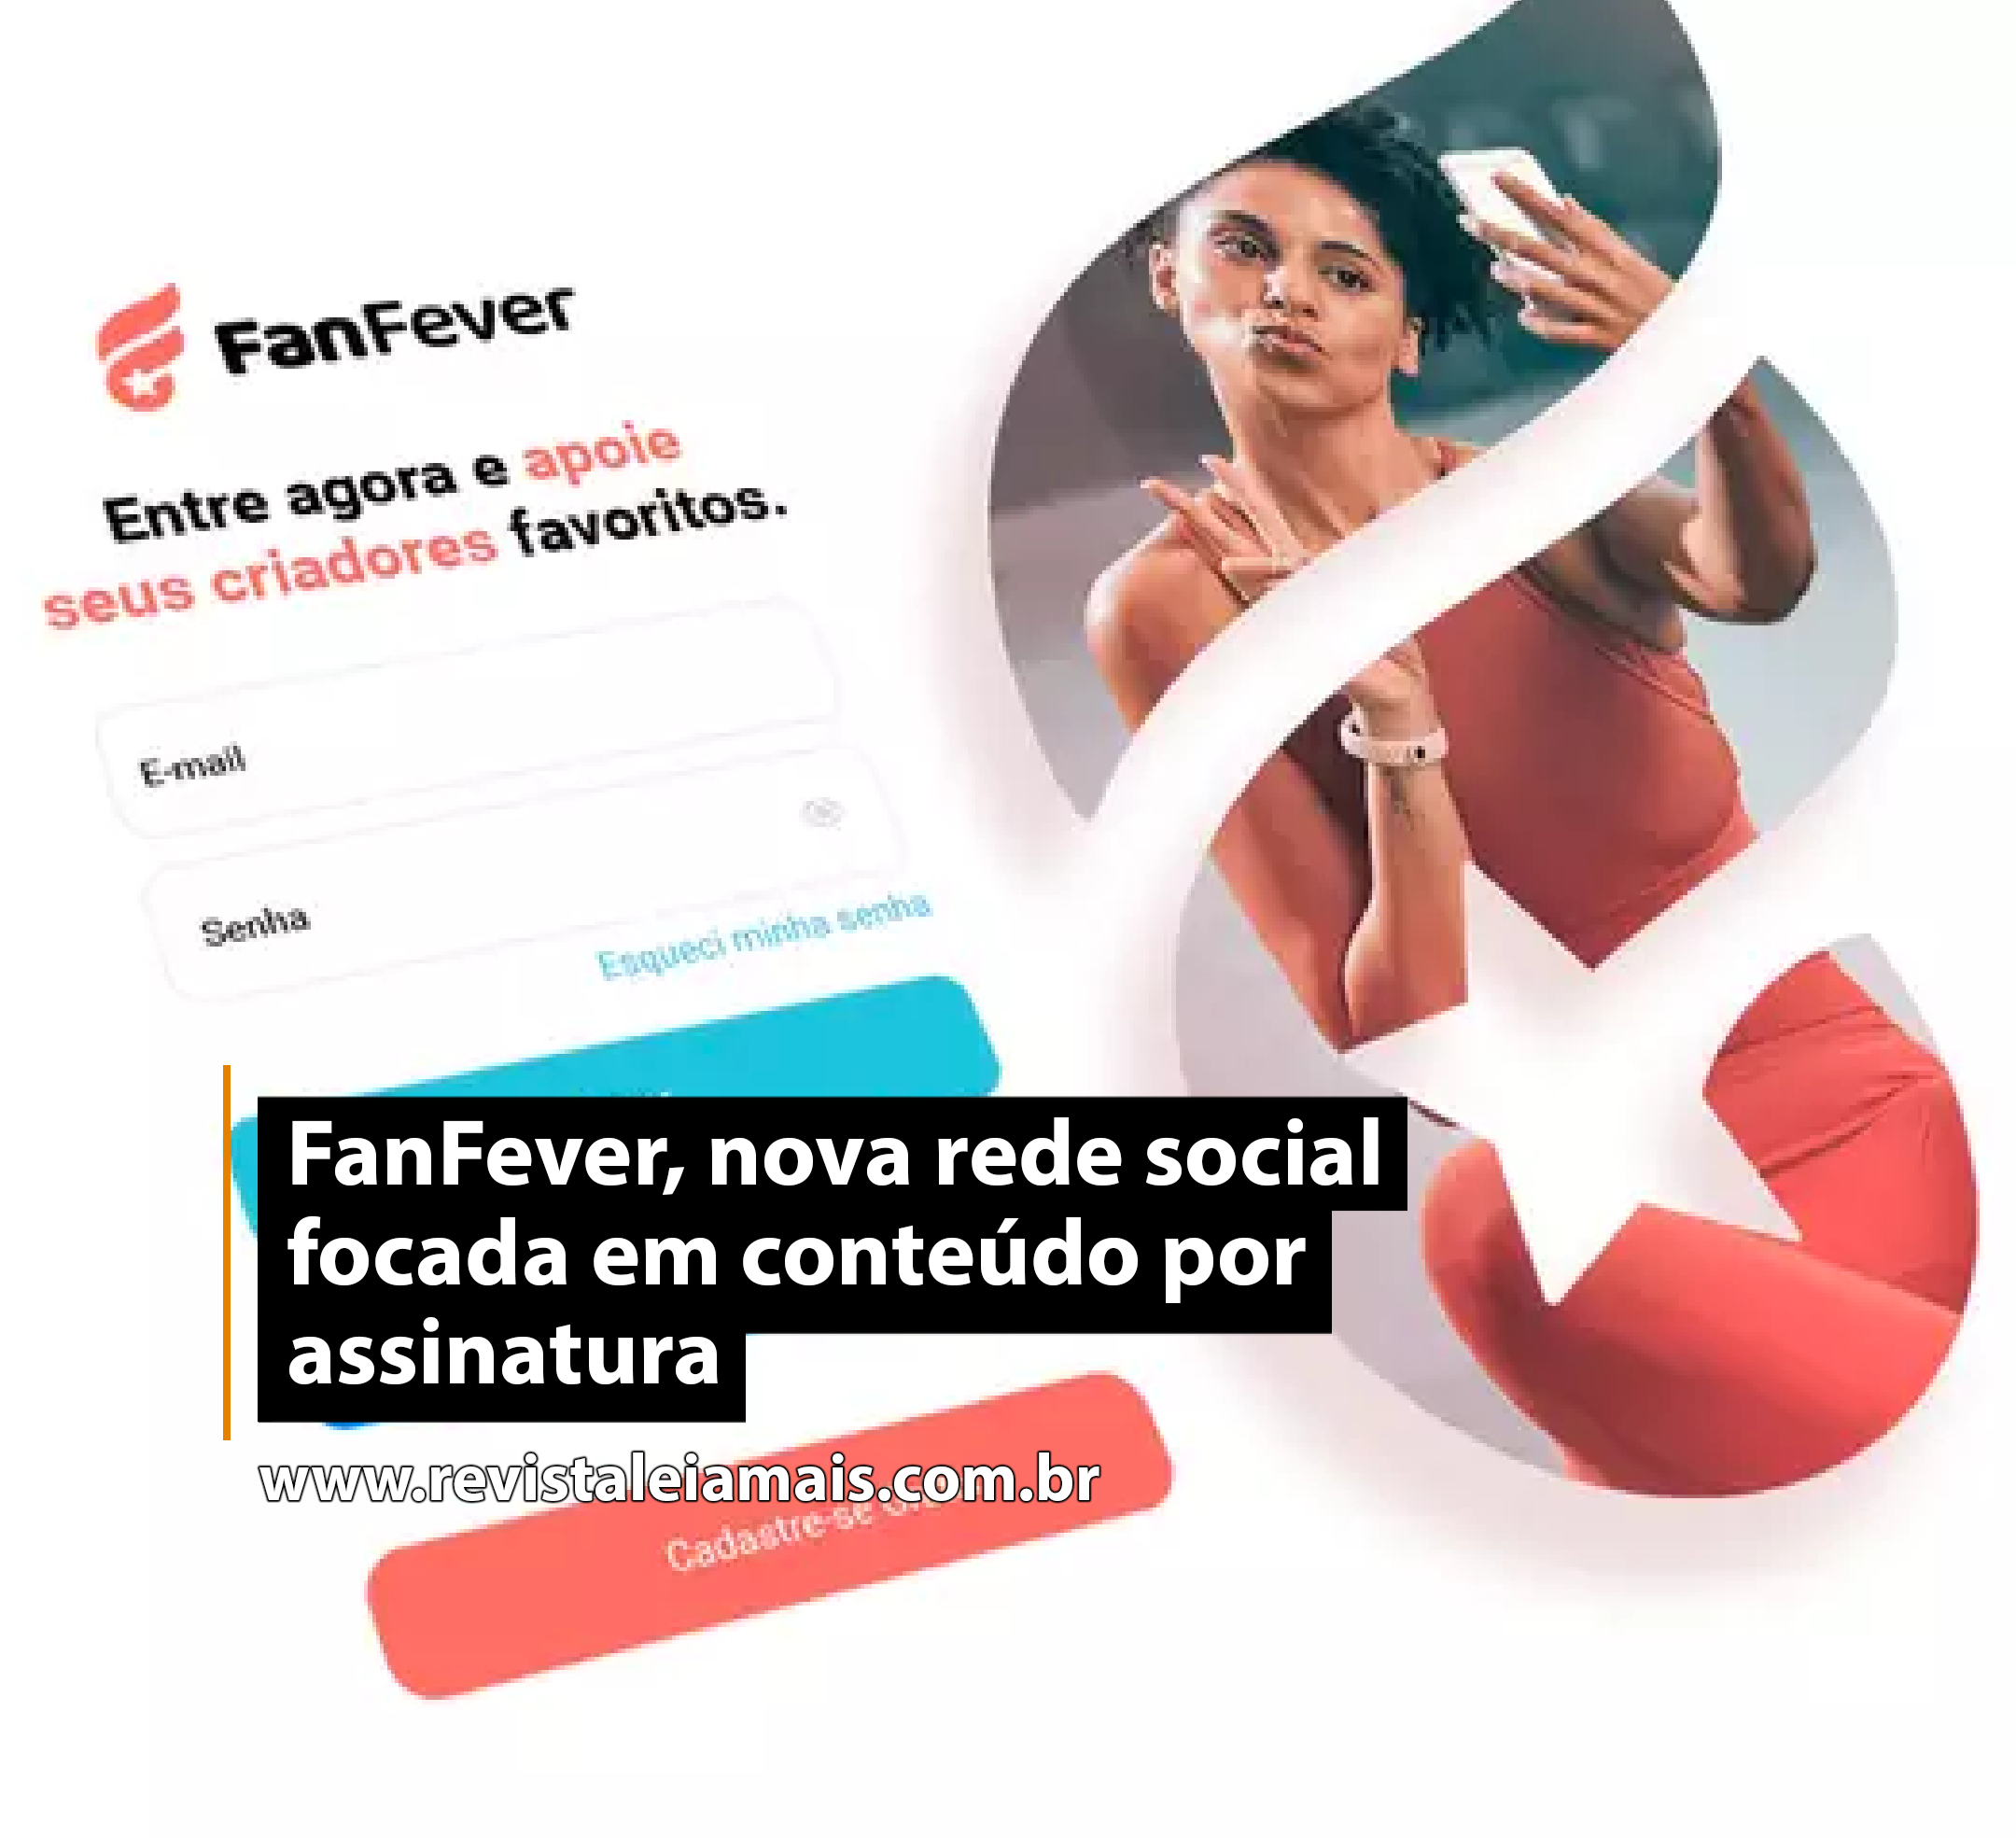 FanFever, nova rede social focada em conteúdo por assinatura